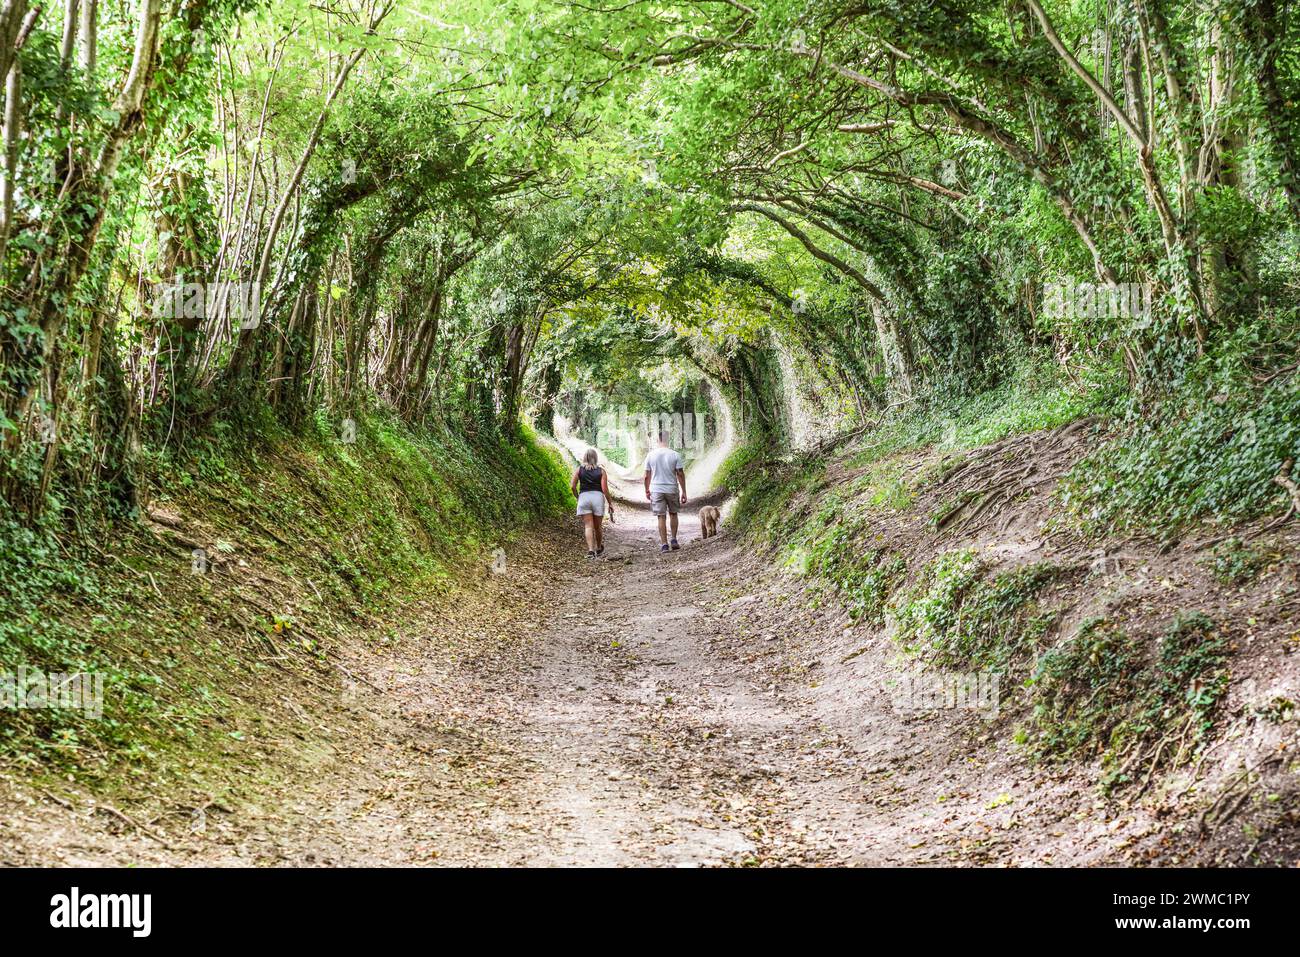 Halnaker Tree tunnel - un tunnel naturel d'arbres près de Chichester menant au moulin à vent Halnaker (West Sussex, Angleterre) Banque D'Images